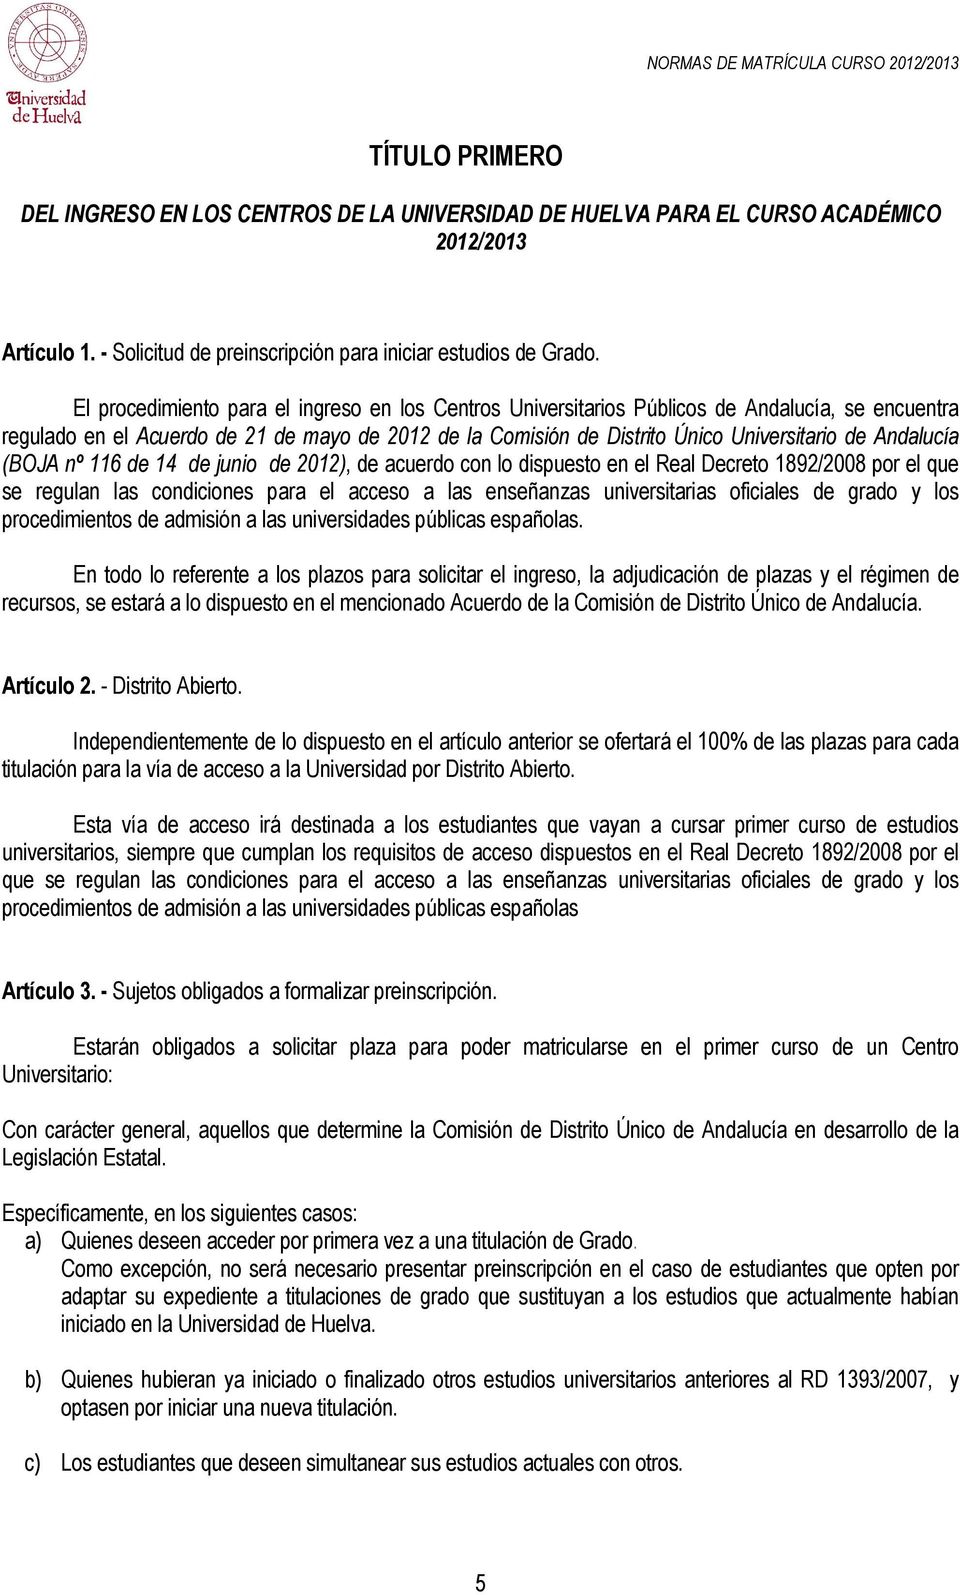 Andalucía (BOJA nº 116 de 14 de junio de 2012), de acuerdo con lo dispuesto en el Real Decreto 1892/2008 por el que se regulan las condiciones para el acceso a las enseñanzas universitarias oficiales